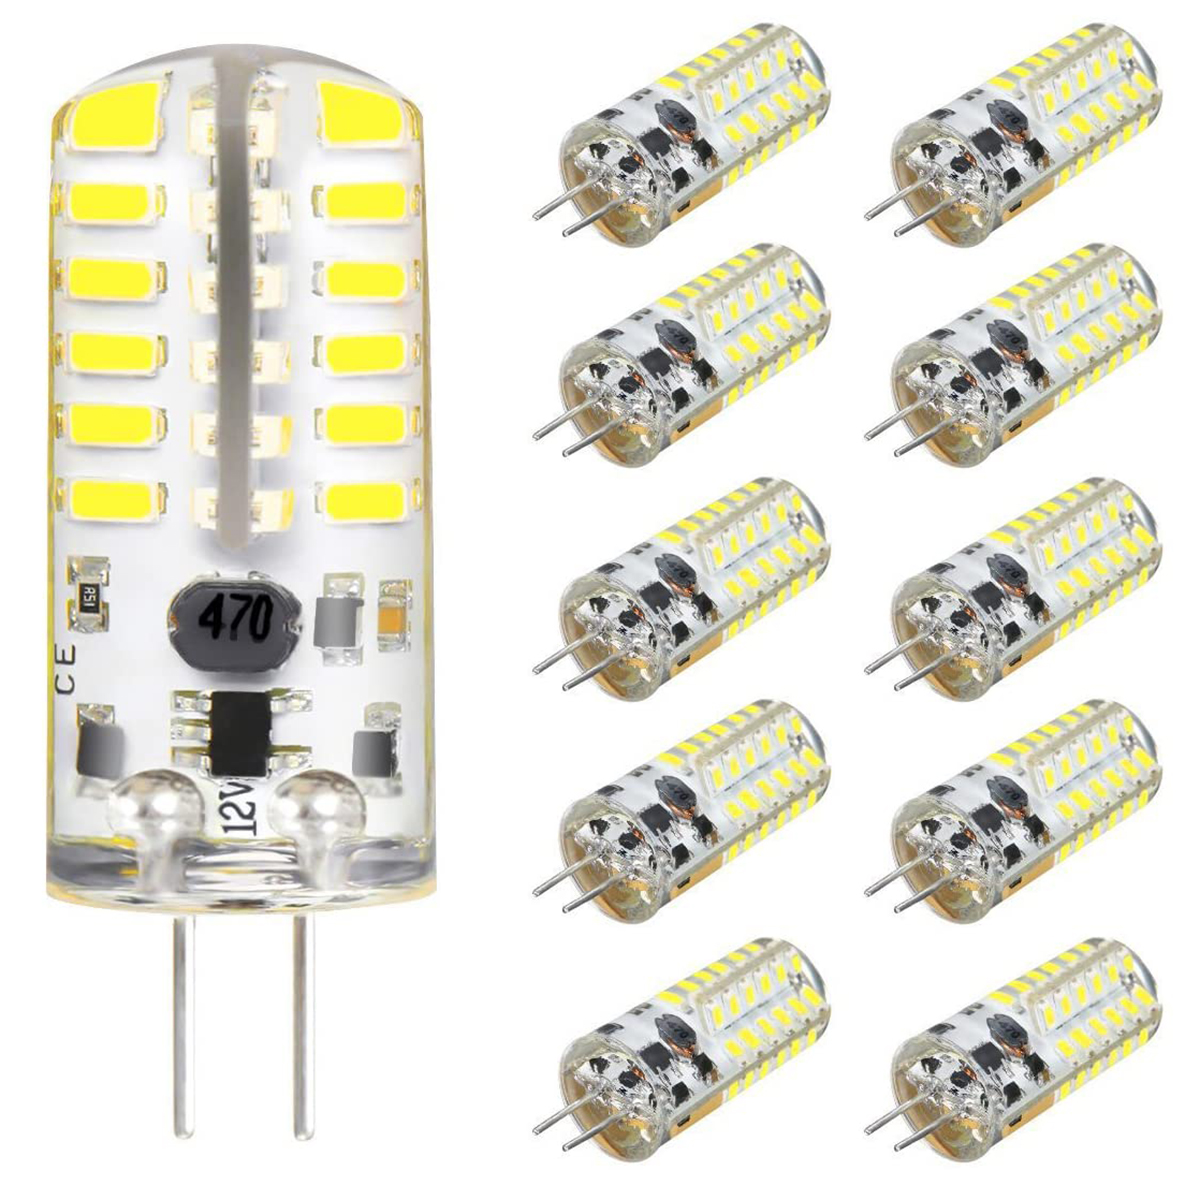 10PCS-DC12V-3W-G4-3014-48SMD-LED-Light-Bulb-Bi-Pin-Base-Capsule-Corn-Lamp-3000K-6000K-Ultra-Bright-L-1890737-1